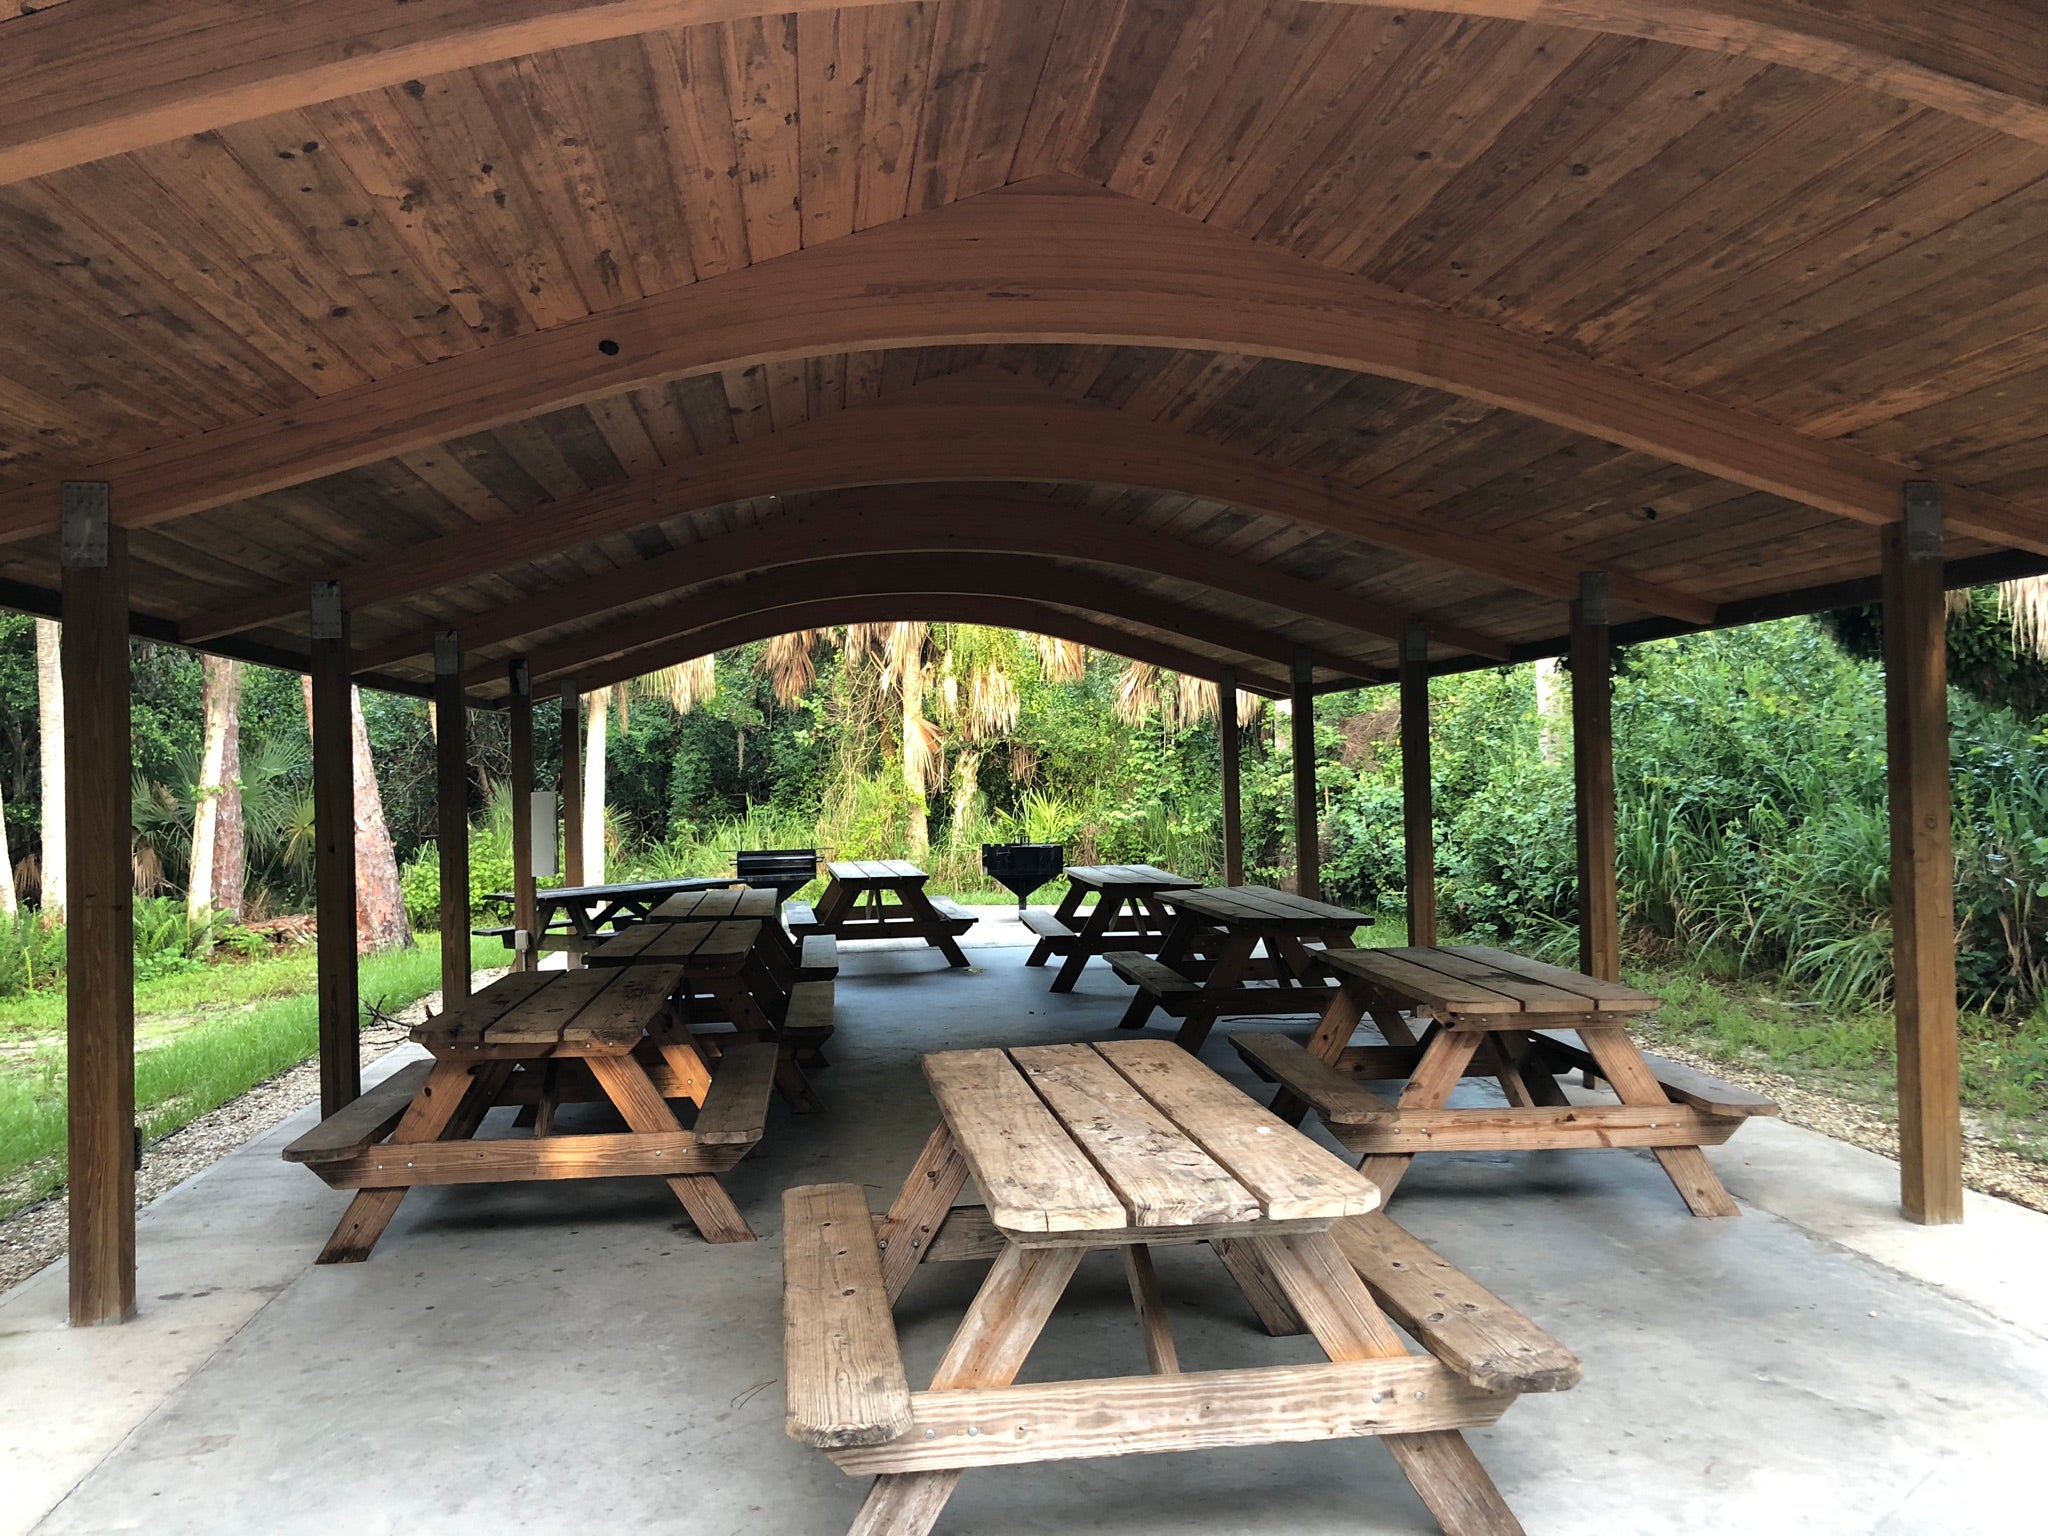 A very nice picnic pavilion